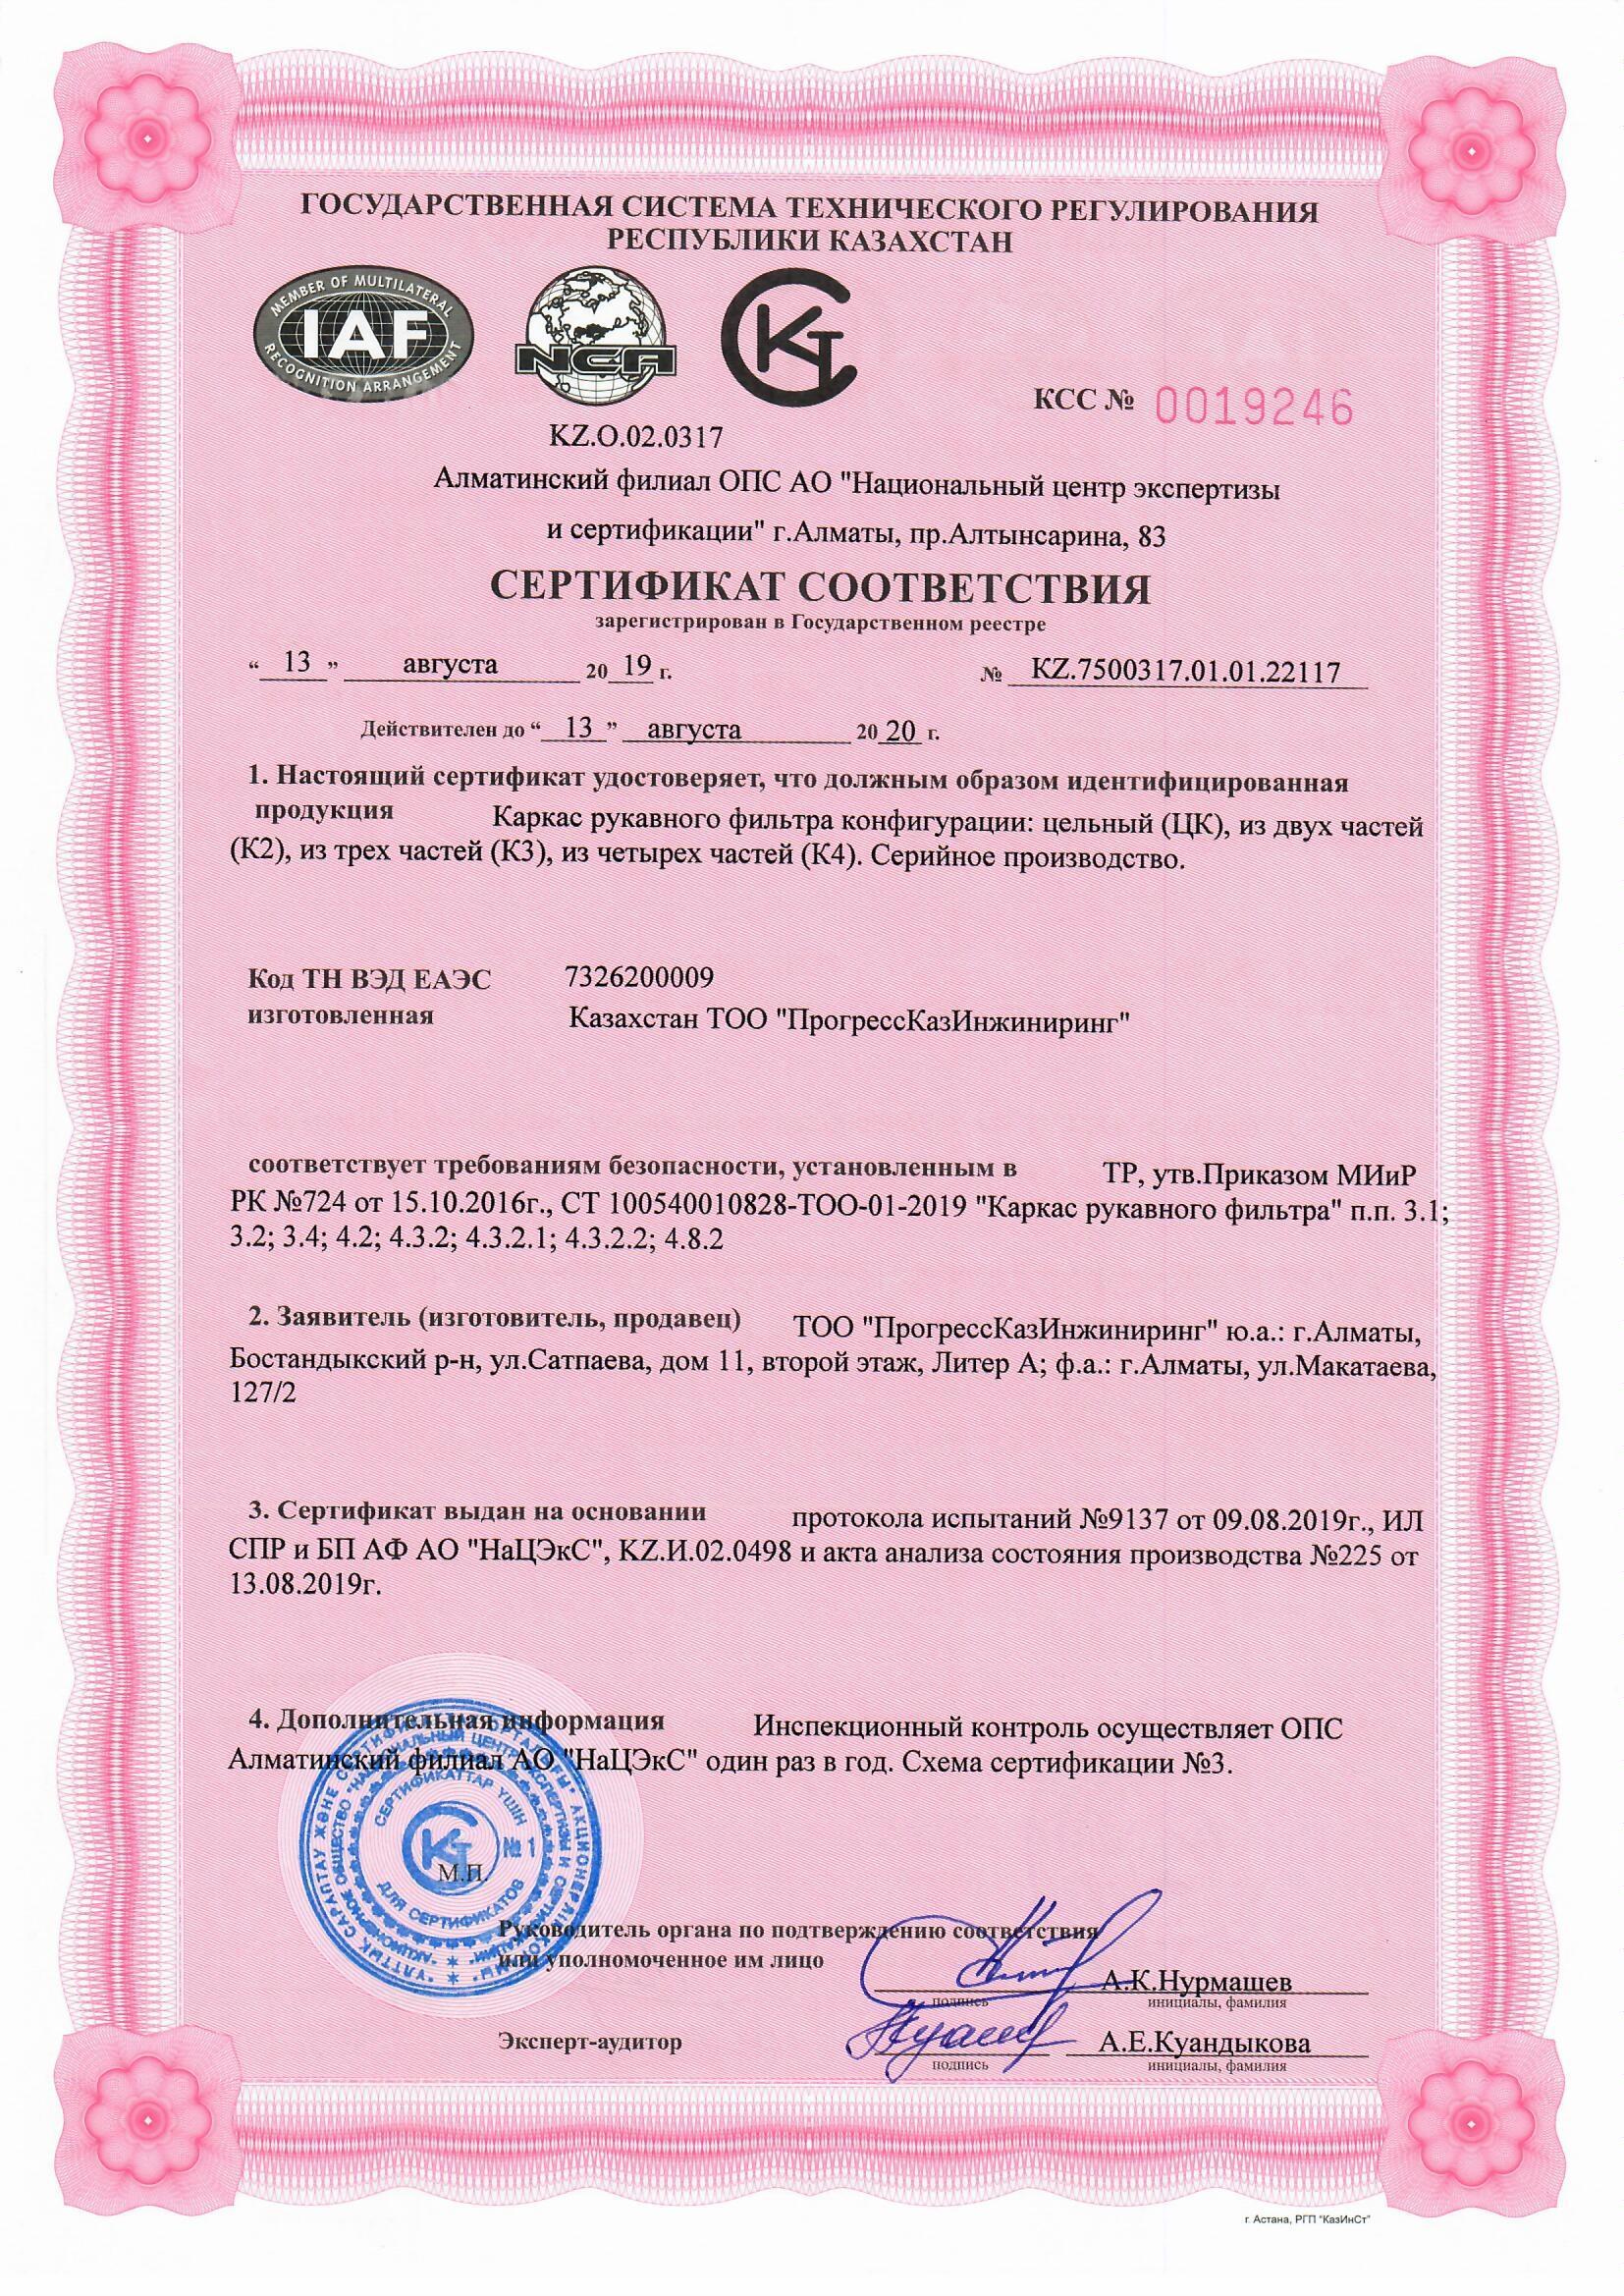 Сертификат соответствия на каркас для рукавного фильтра